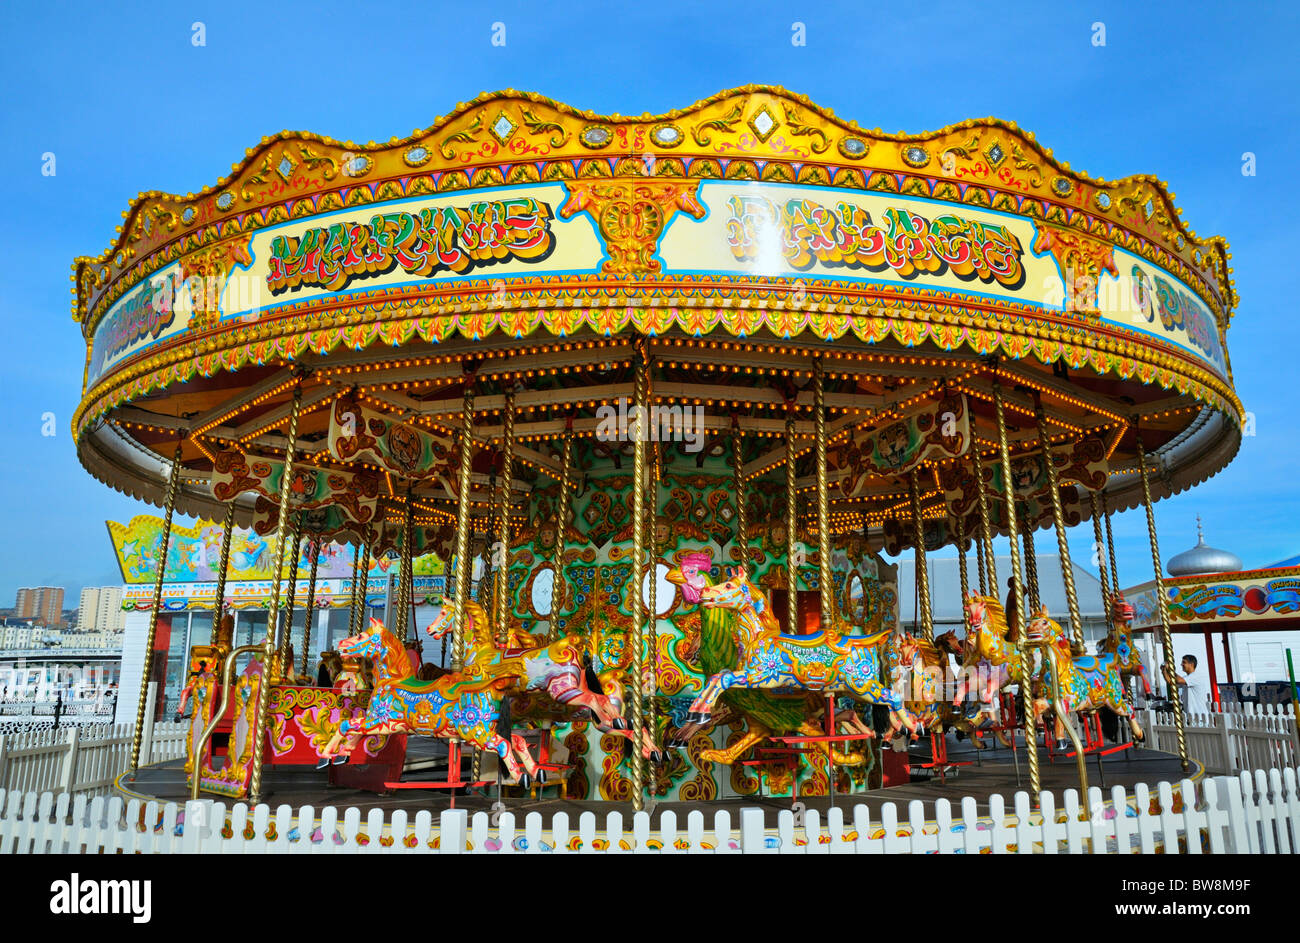 Carousel sur Palace Pier, Brighton, East Sussex, UK Banque D'Images